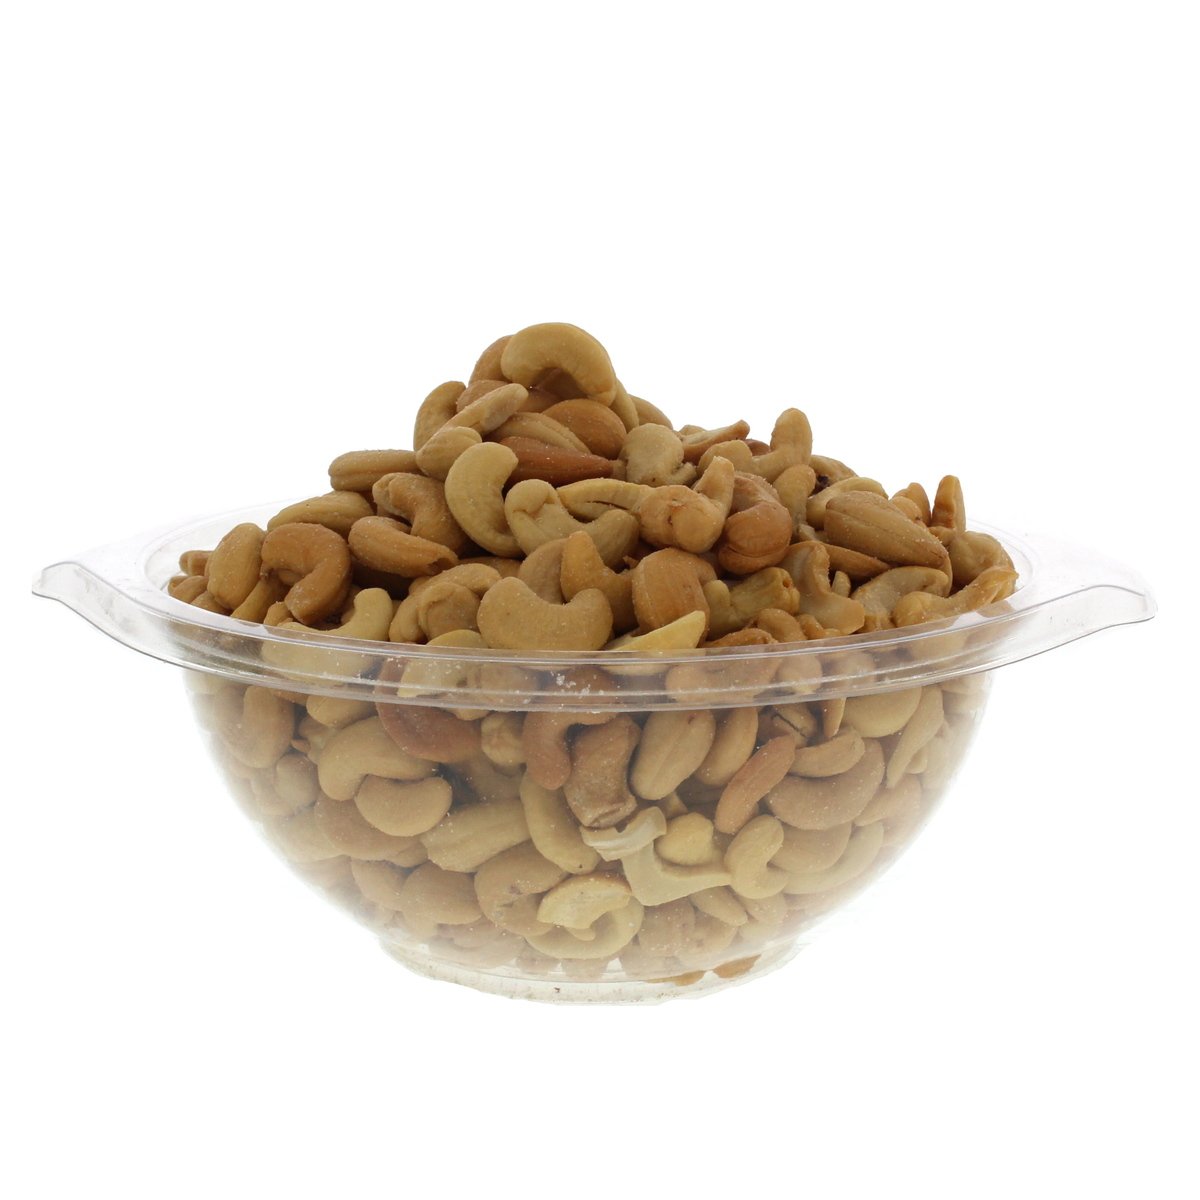 اشتري قم بشراء كاجو محمص 1 كيلو Online at Best Price من الموقع - من لولو هايبر ماركت Roastery Nuts في الامارات